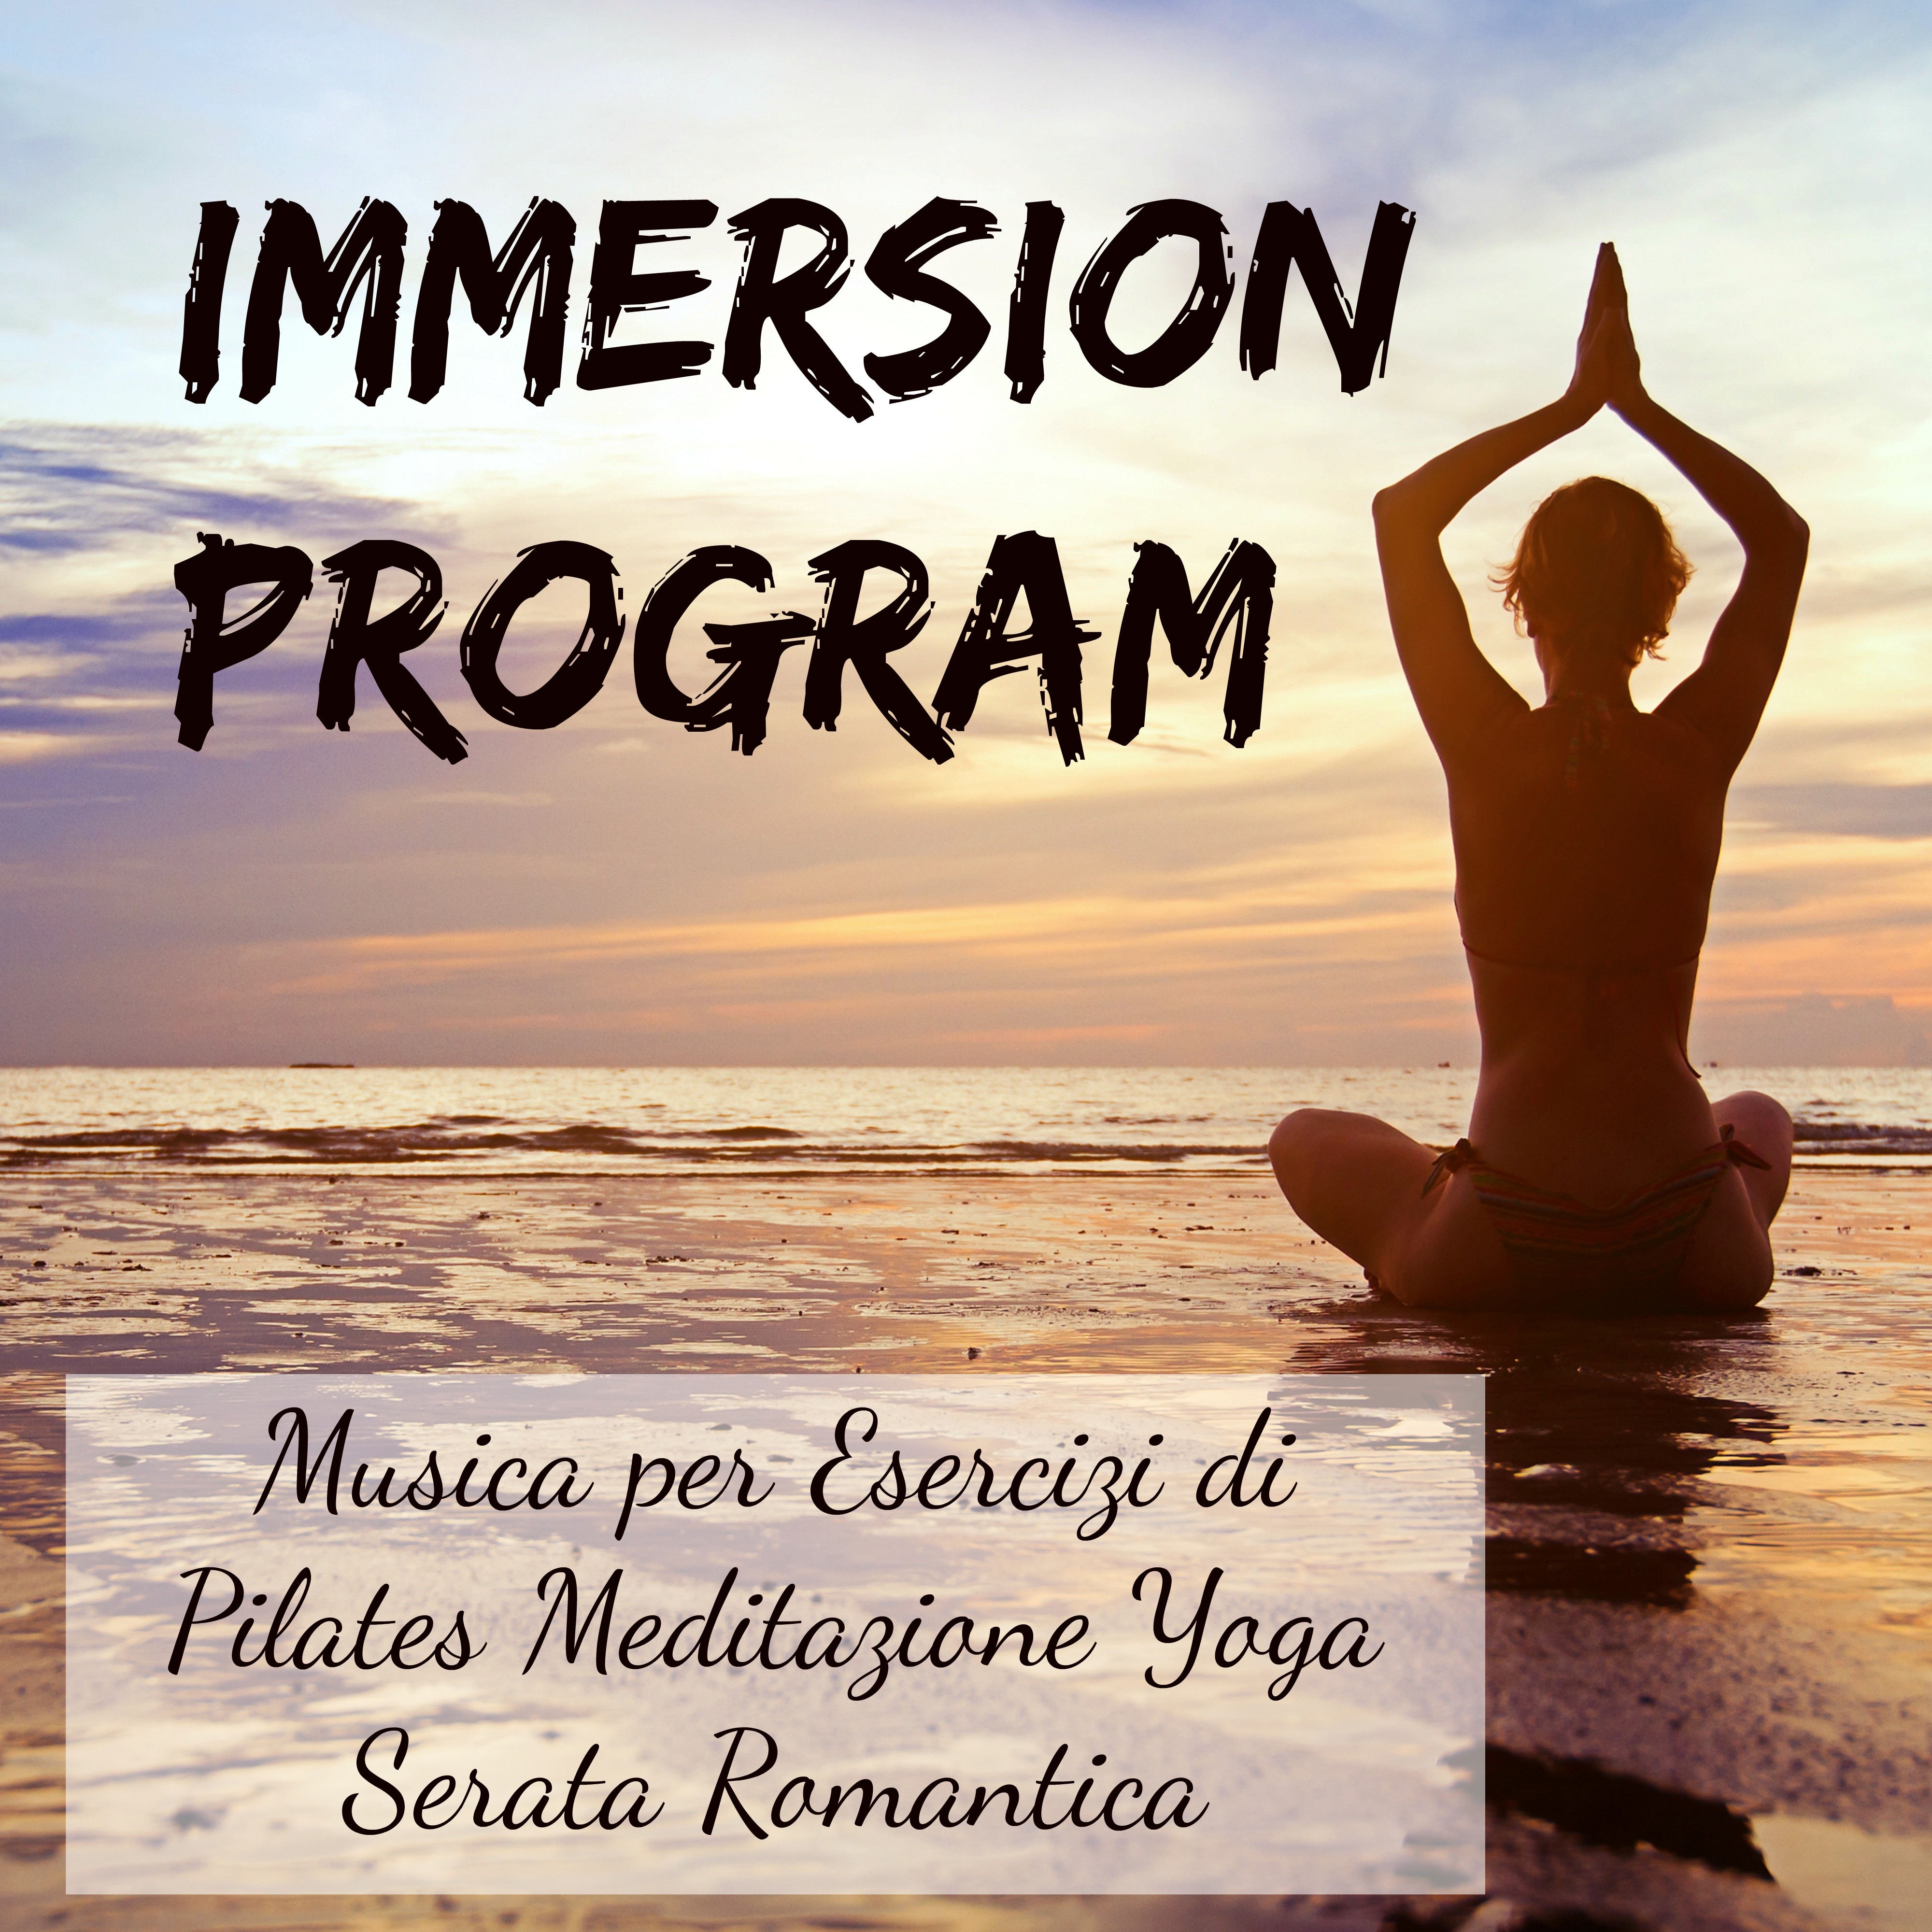 Immersion Program -  Musica per Esercizi di Pilates Meditazione Yoga Serata Romantica con Suoni Chill Lounge